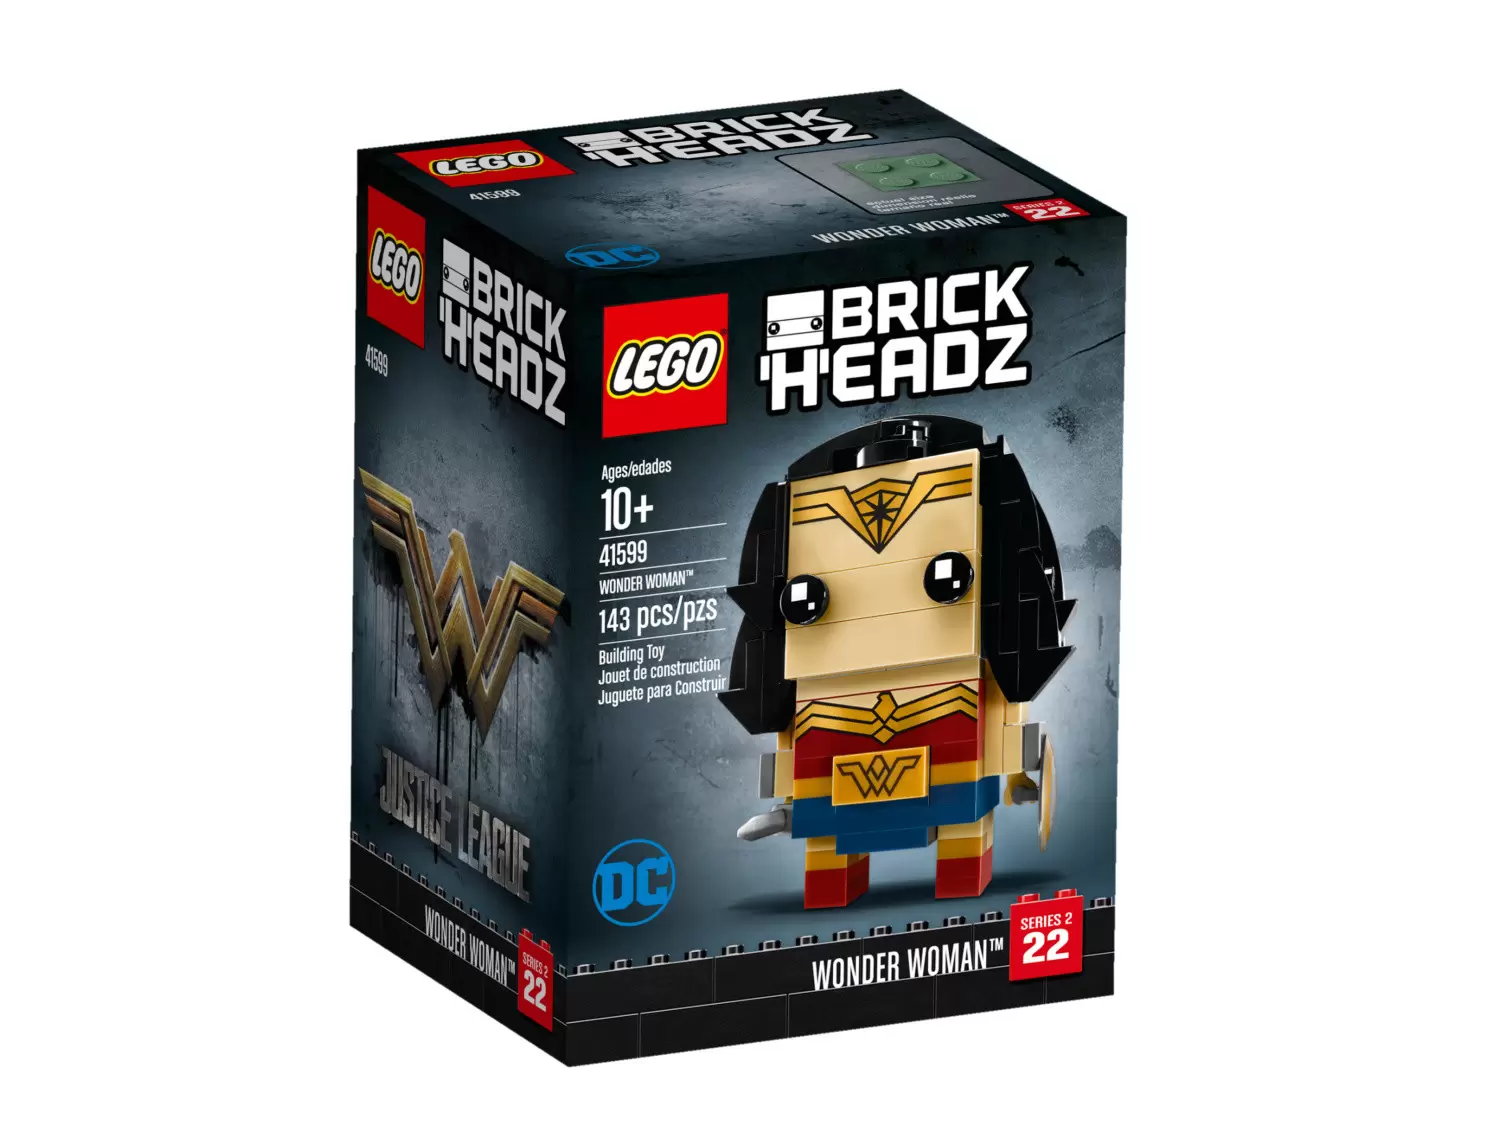 LEGO BrickHeadz - 22 - Wonder Woman